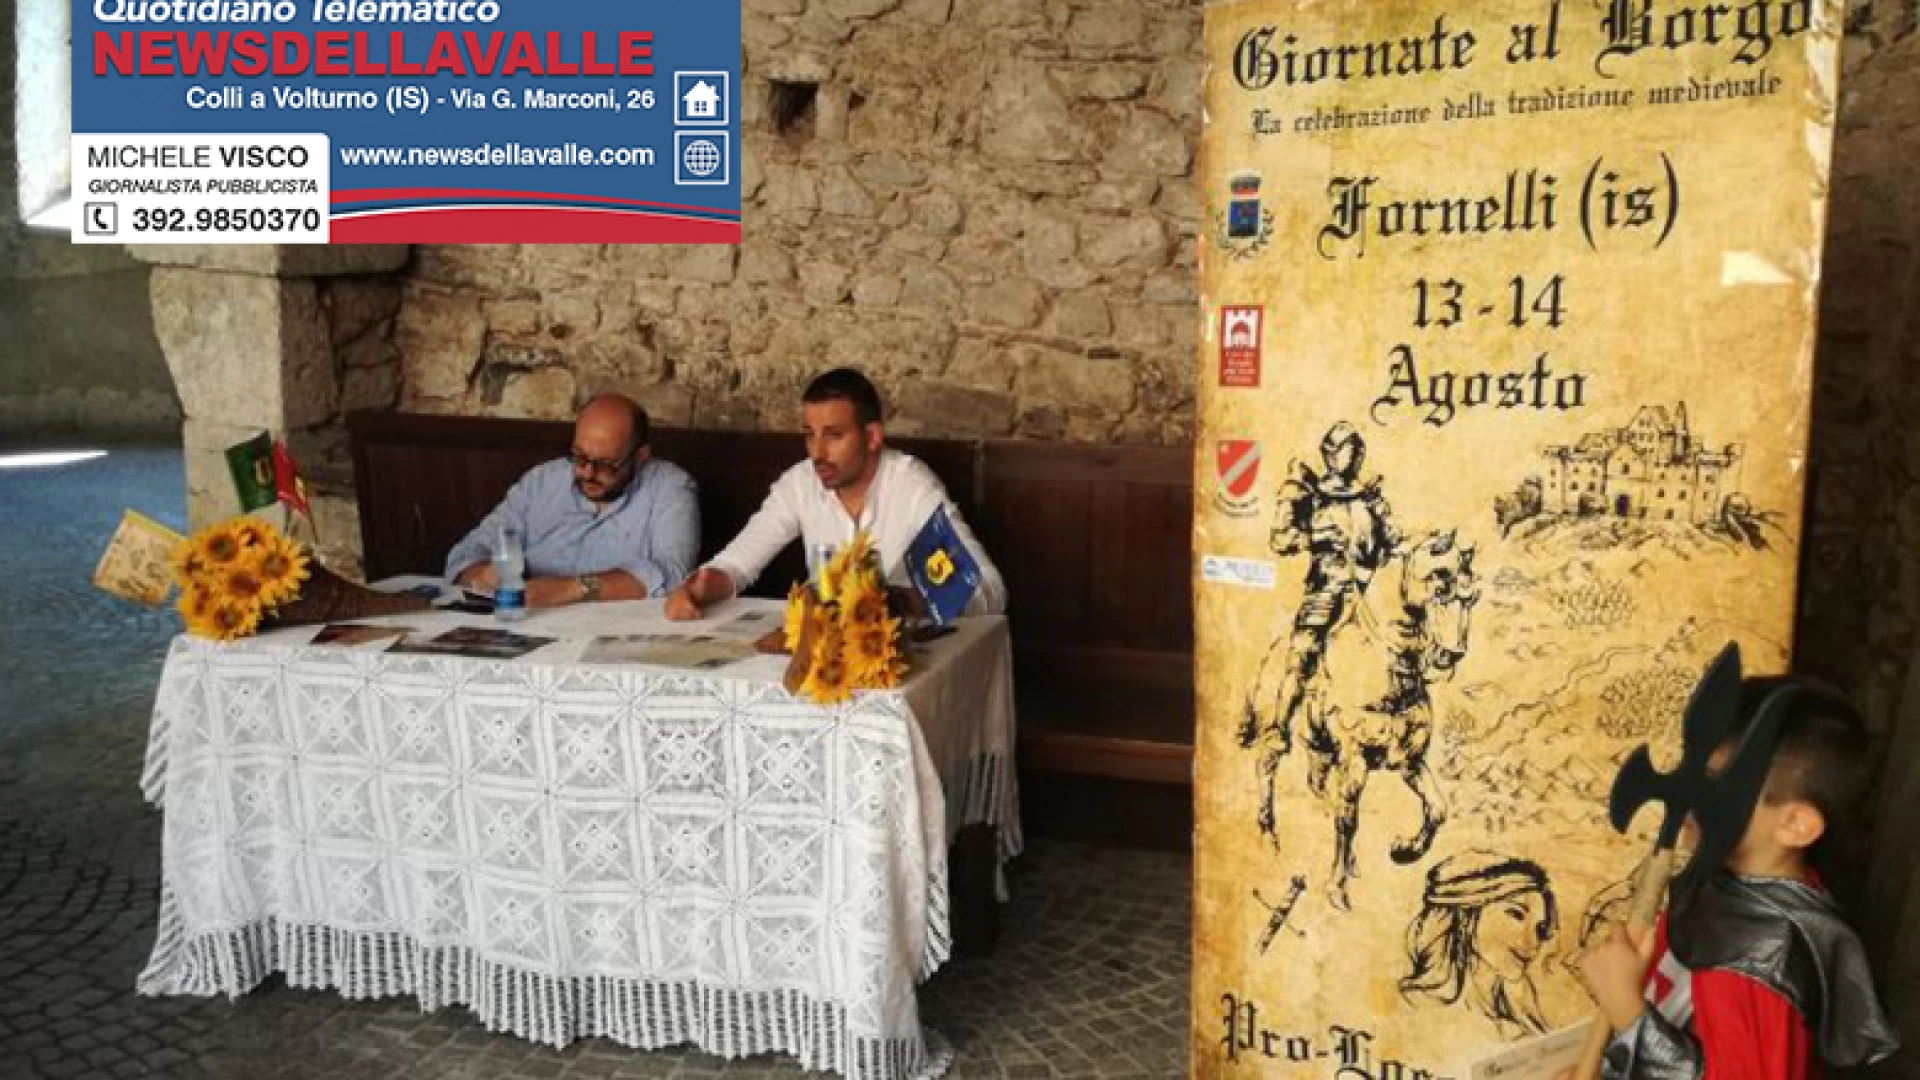 Fornelli: la 24°esima edizione delle Giornate al Borgo accende il centro storico. Presentata l'edizione 2018. Guarda il nostro servizio video